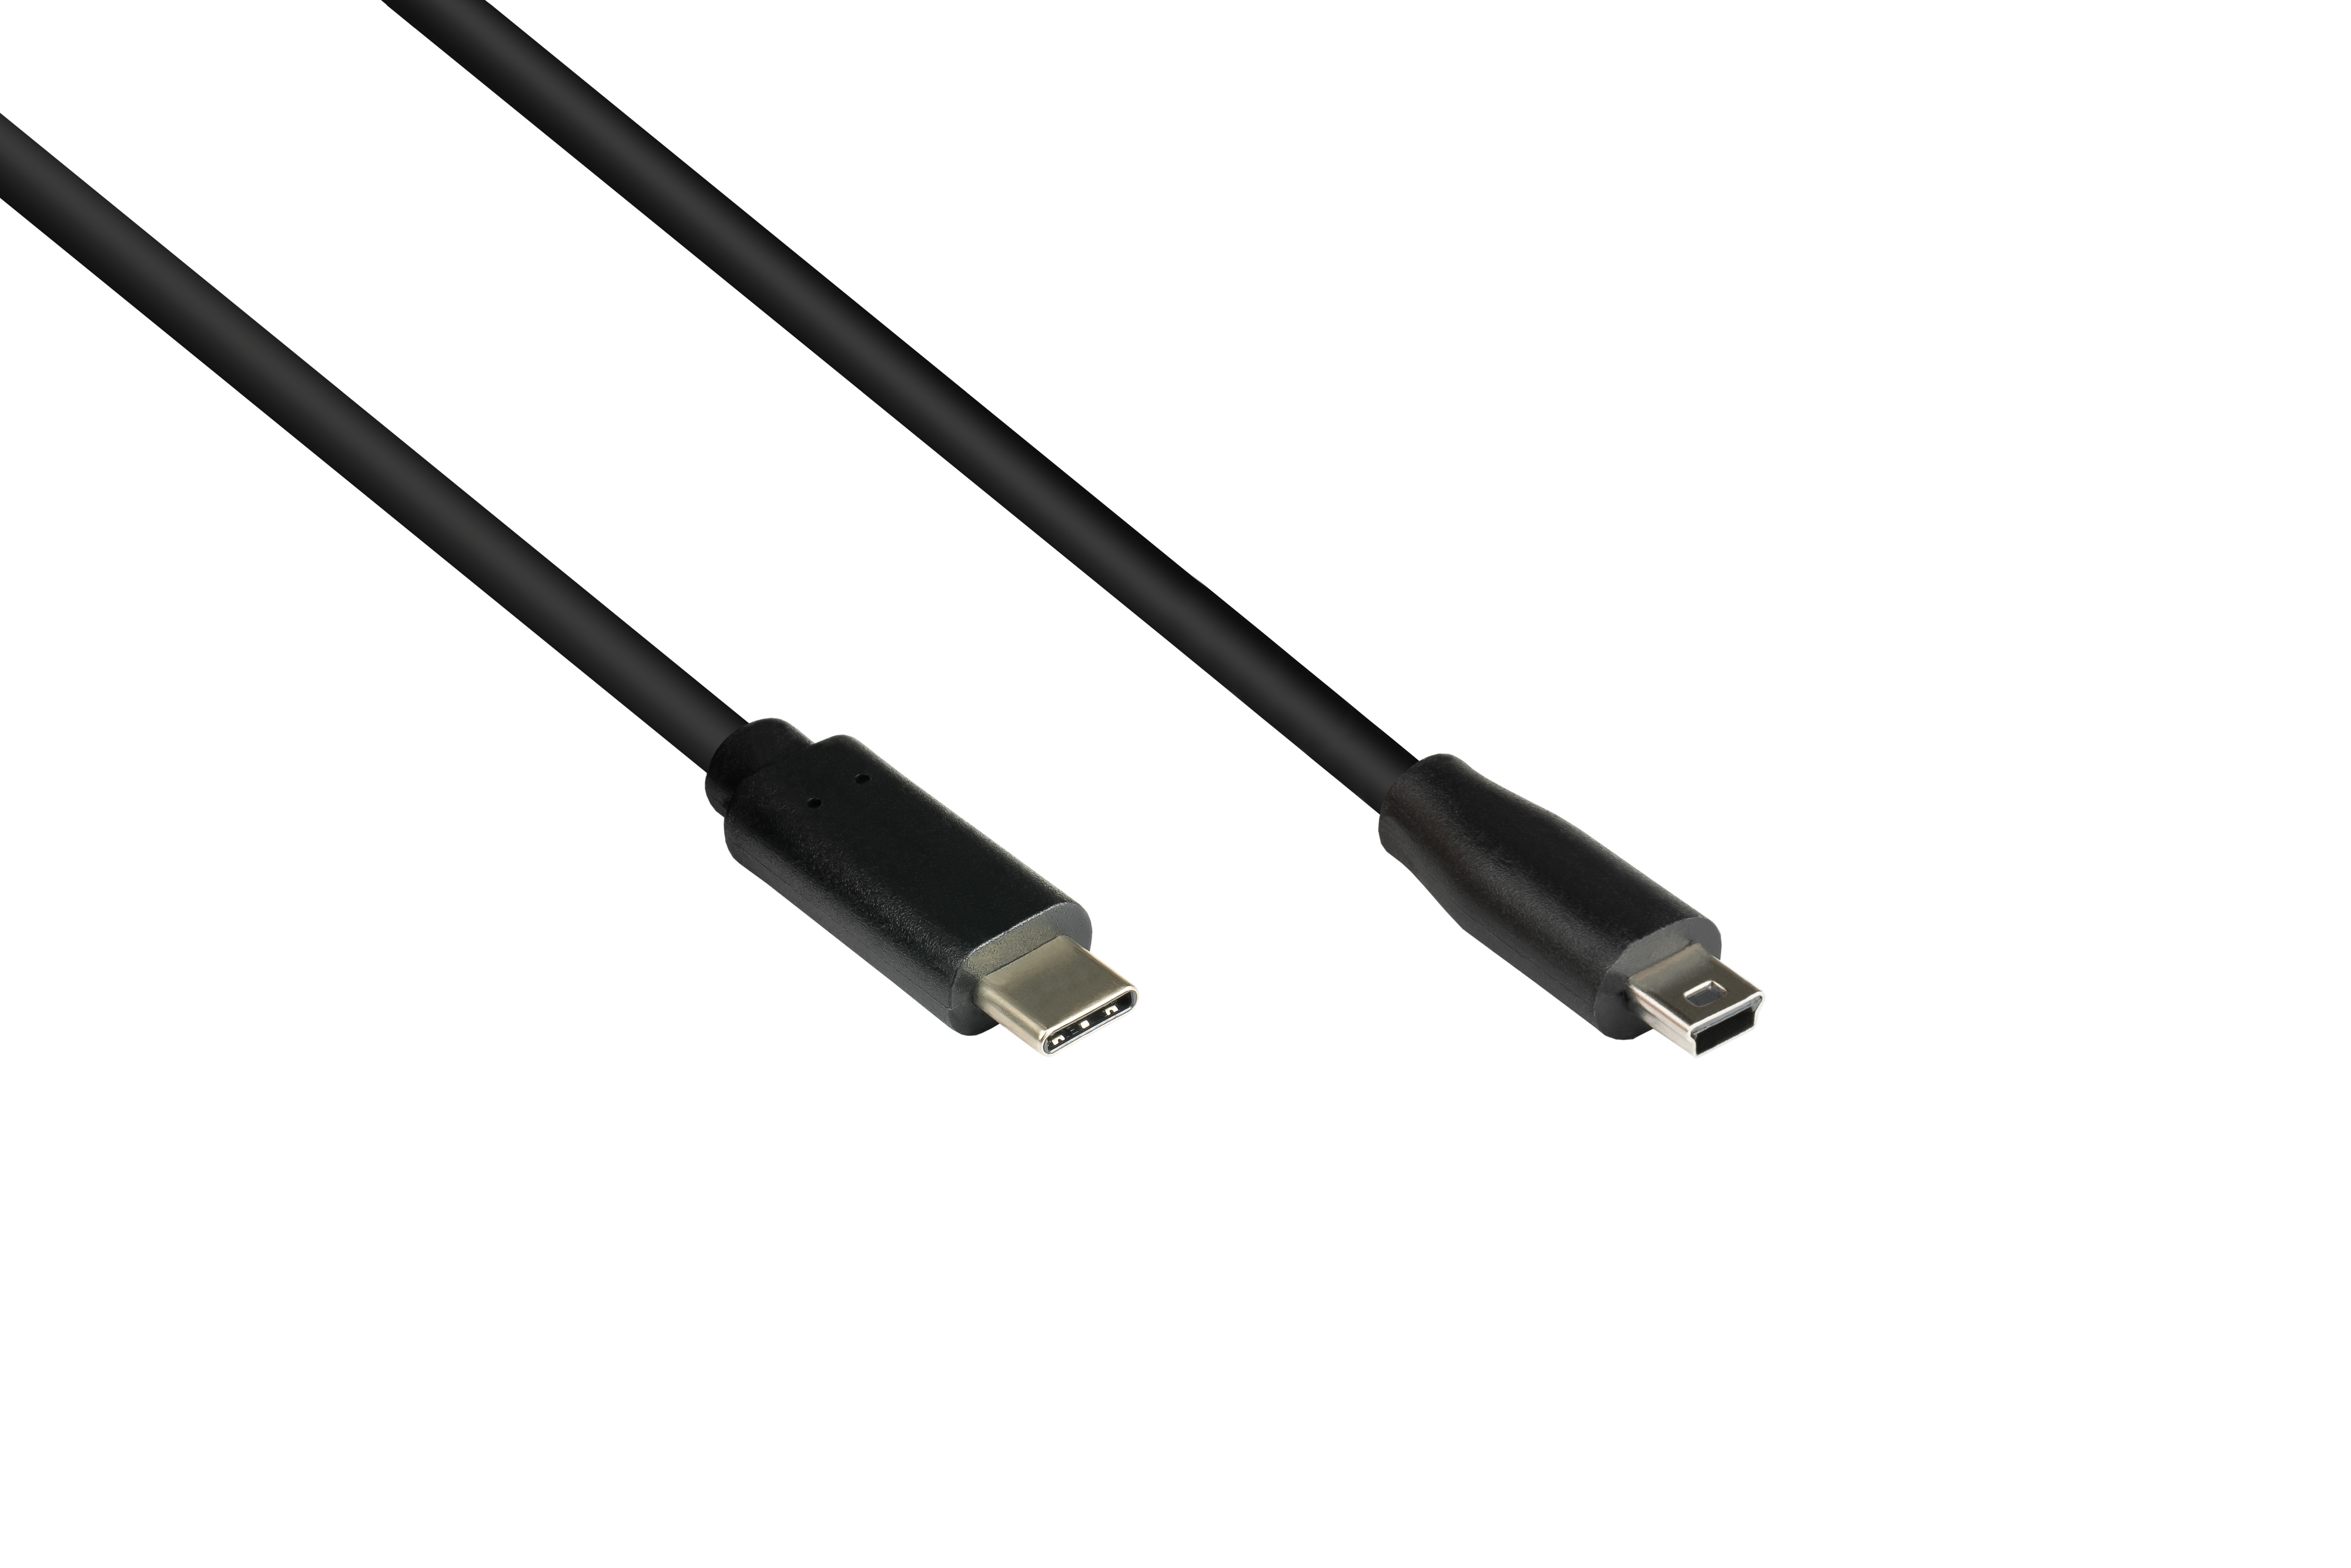 Stecker Anschlusskabel Stecker GOOD an schwarz 2.0, USB B USB-C™ 5-pin, Mini CONNECTIONS